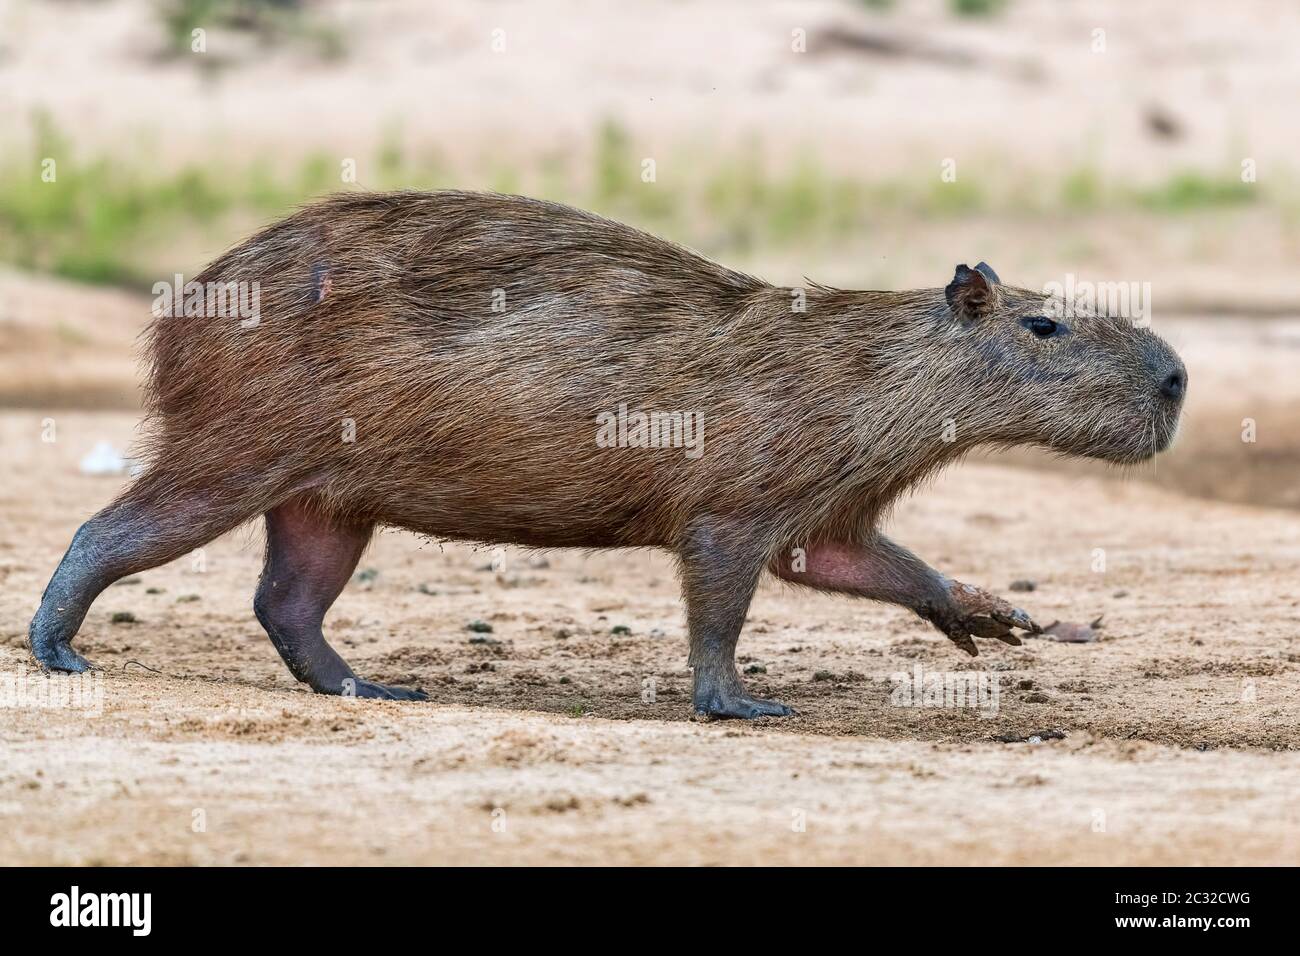 Capybara oder Wasserschwein (Hydrochoerus hydrochaeris) schreitet auf einer sandbank, Pantanal, Mato Grosso, Brasilien Foto Stock